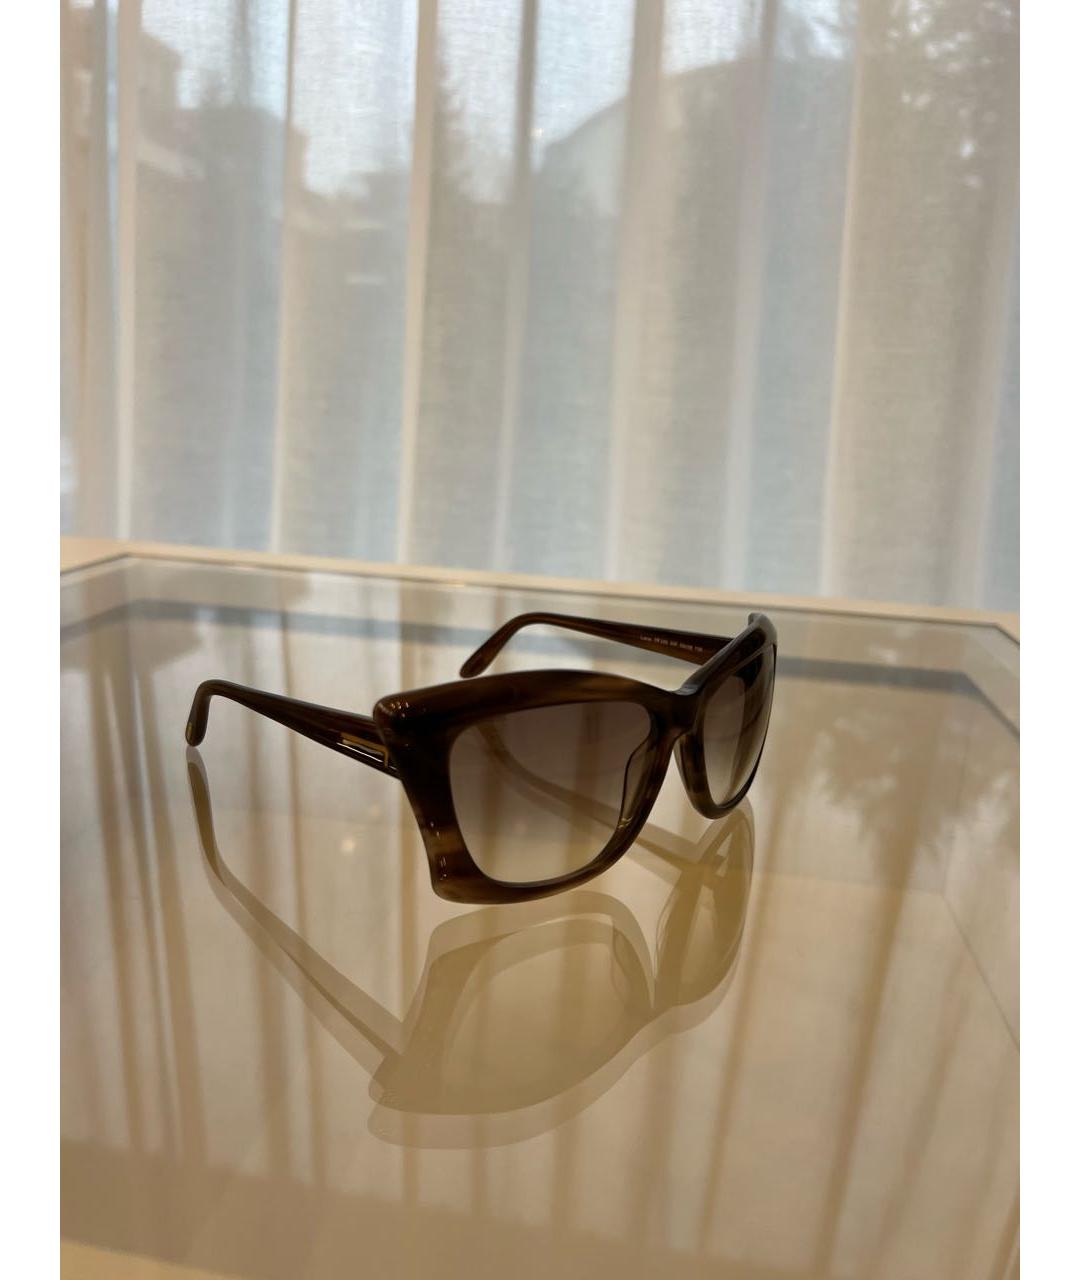 TOM FORD Коричневые пластиковые солнцезащитные очки, фото 5